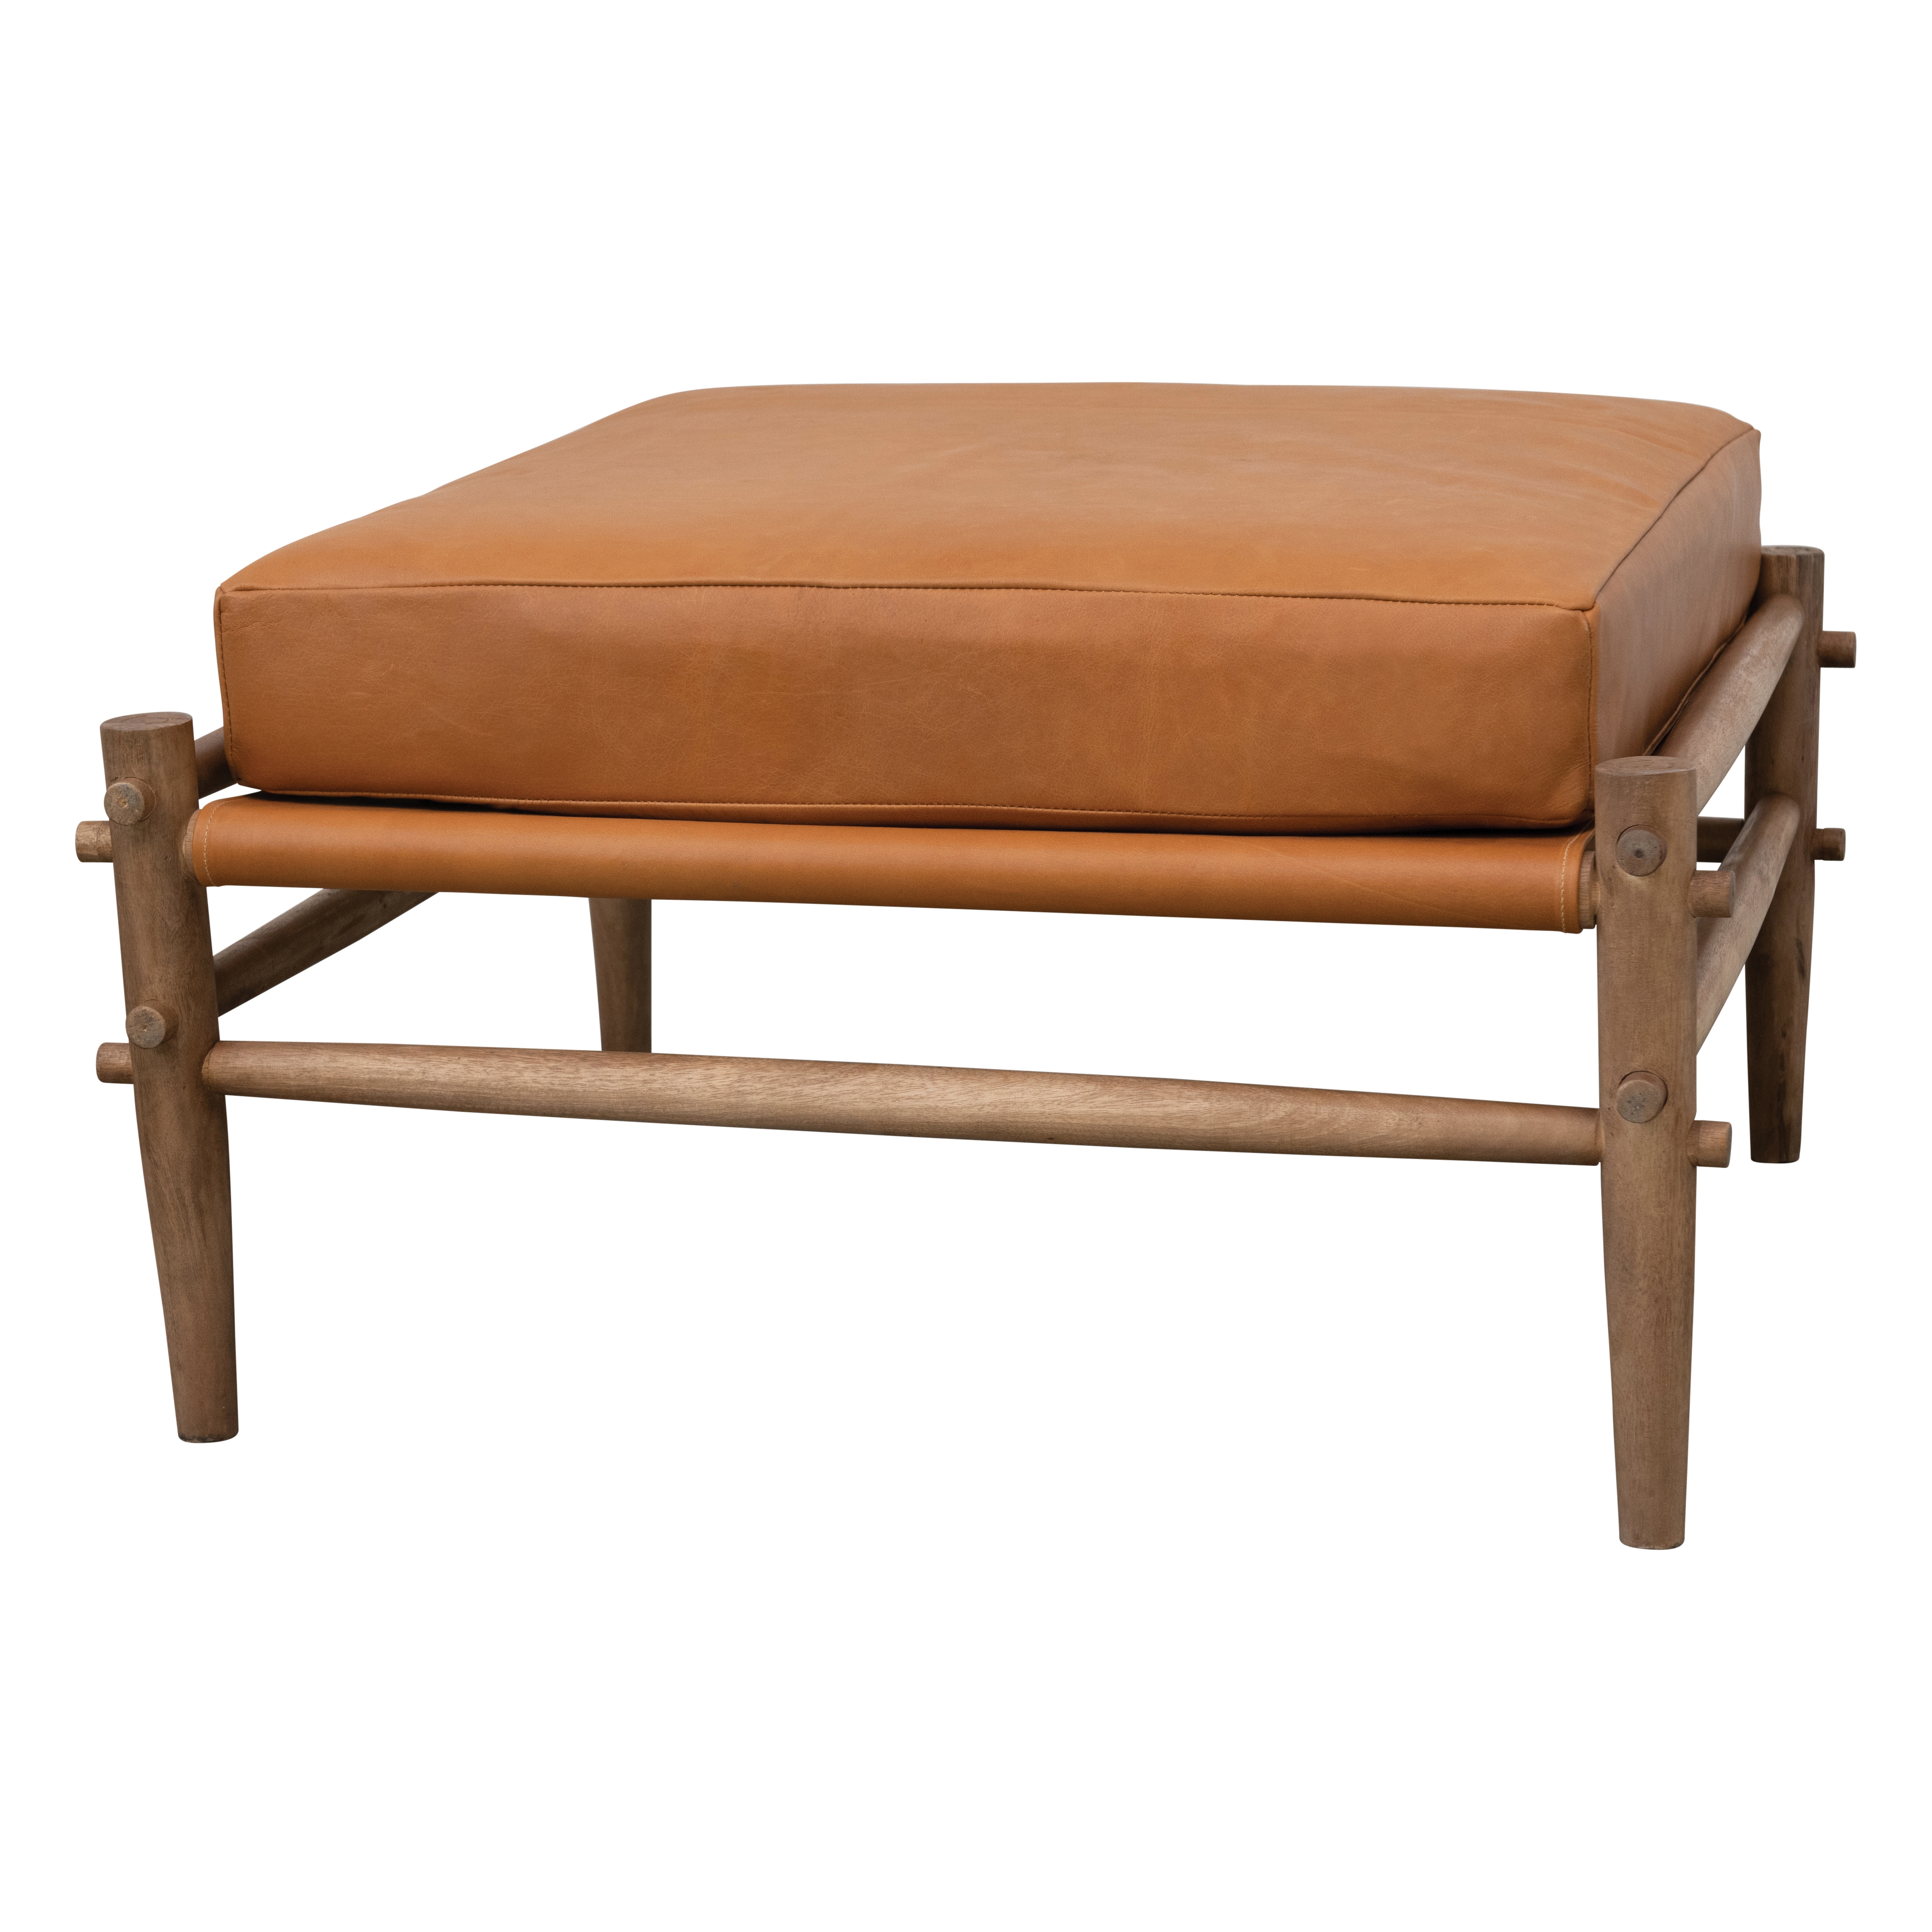 Mango Wood Ottoman with Leather Cushion - Image 0